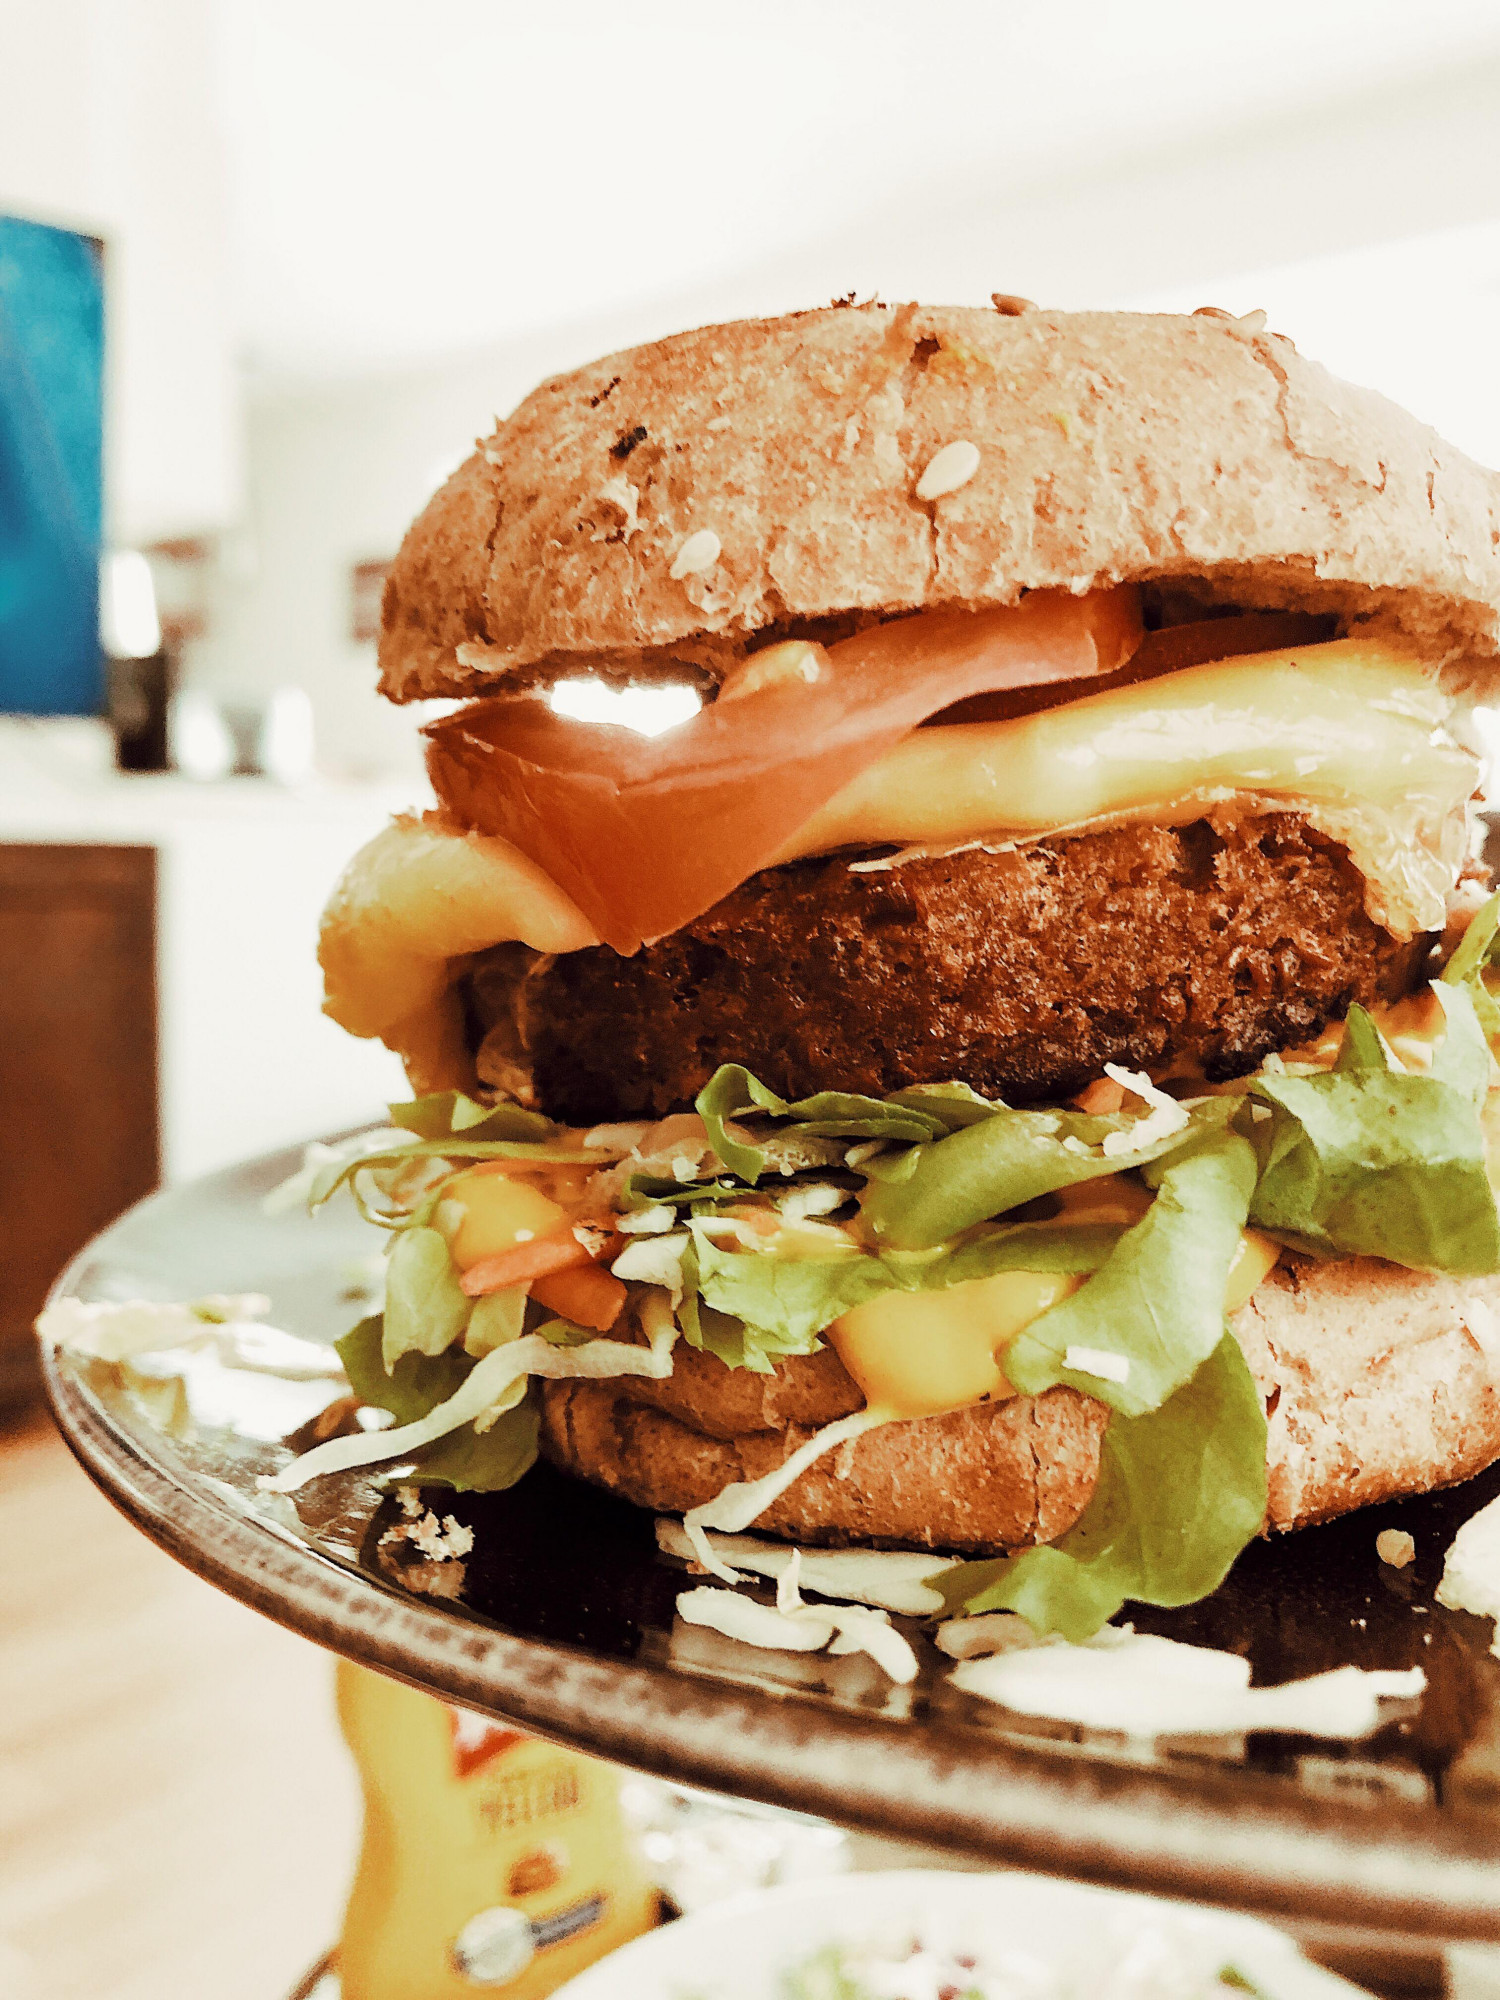 Anmeldelse af en burger: BEYOND MEAT | Alle indlæg | Kira Eggers